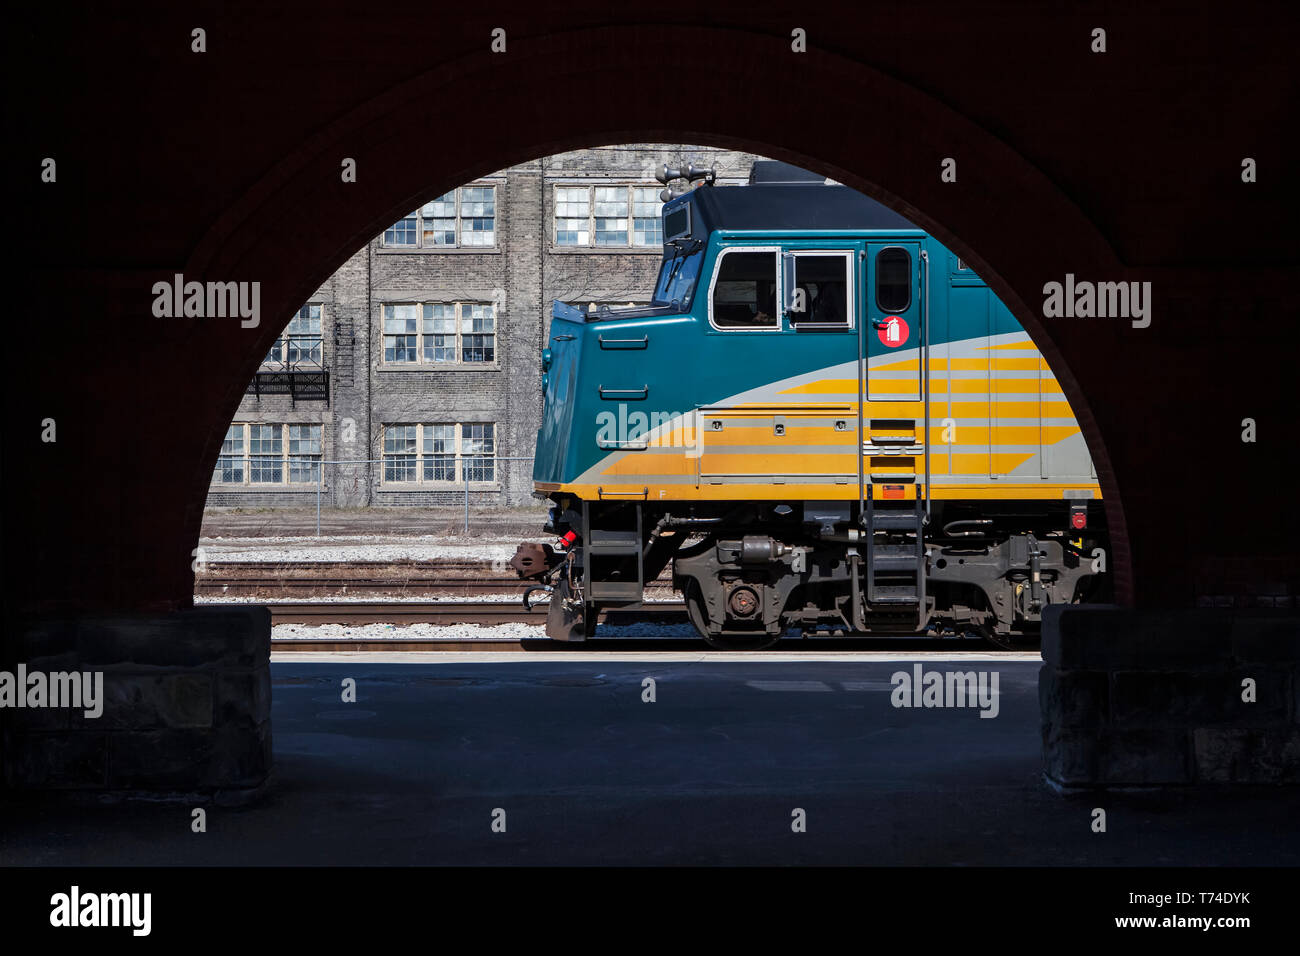 La locomotive du train de voyageurs, dans le cadre d'archway station, à Kitchener, Ontario, Canada Banque D'Images